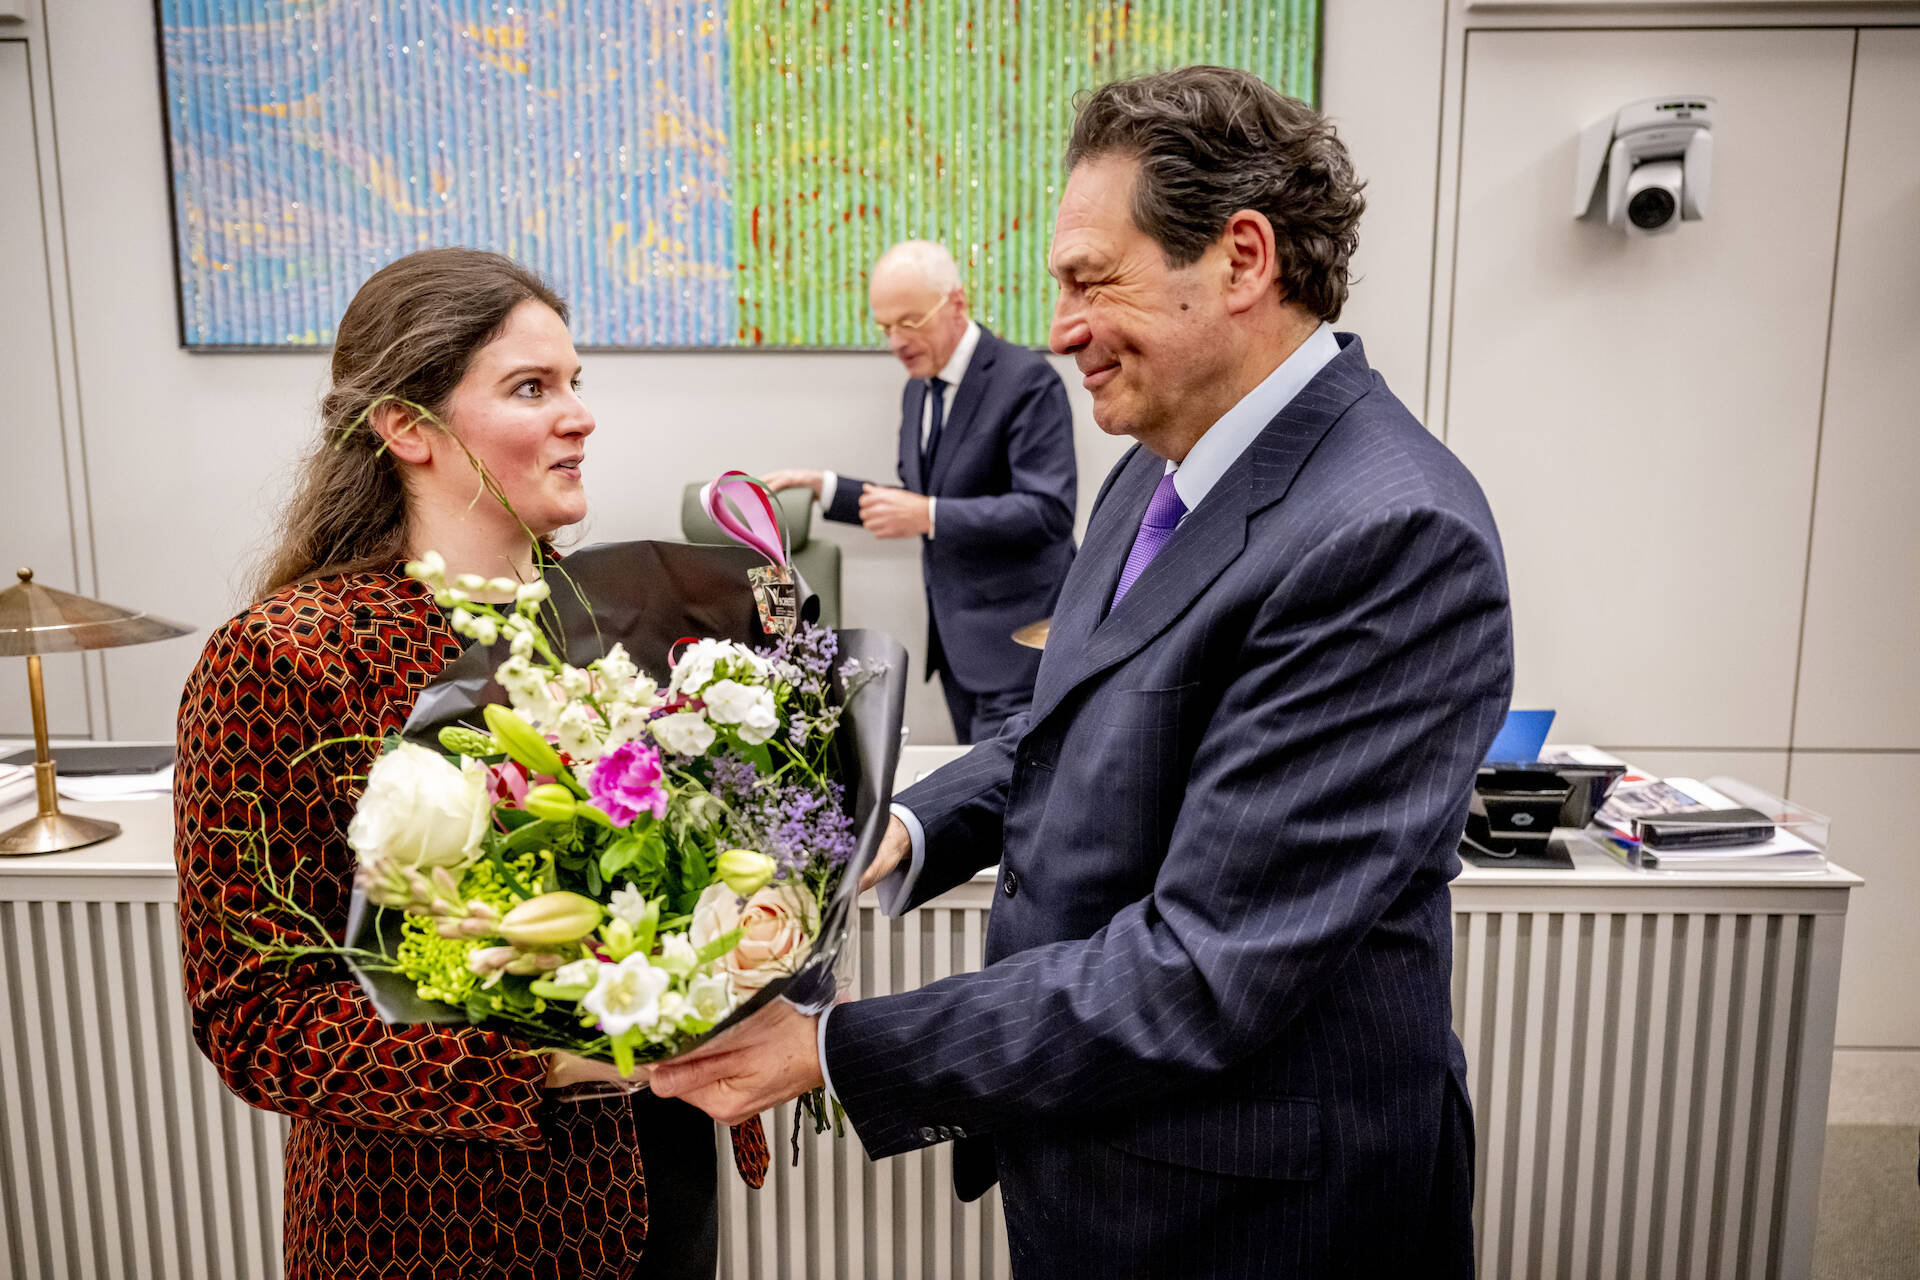 Felicitaties van SP-fractievoorzitter Janssen voor Van Aelst-den Uijl